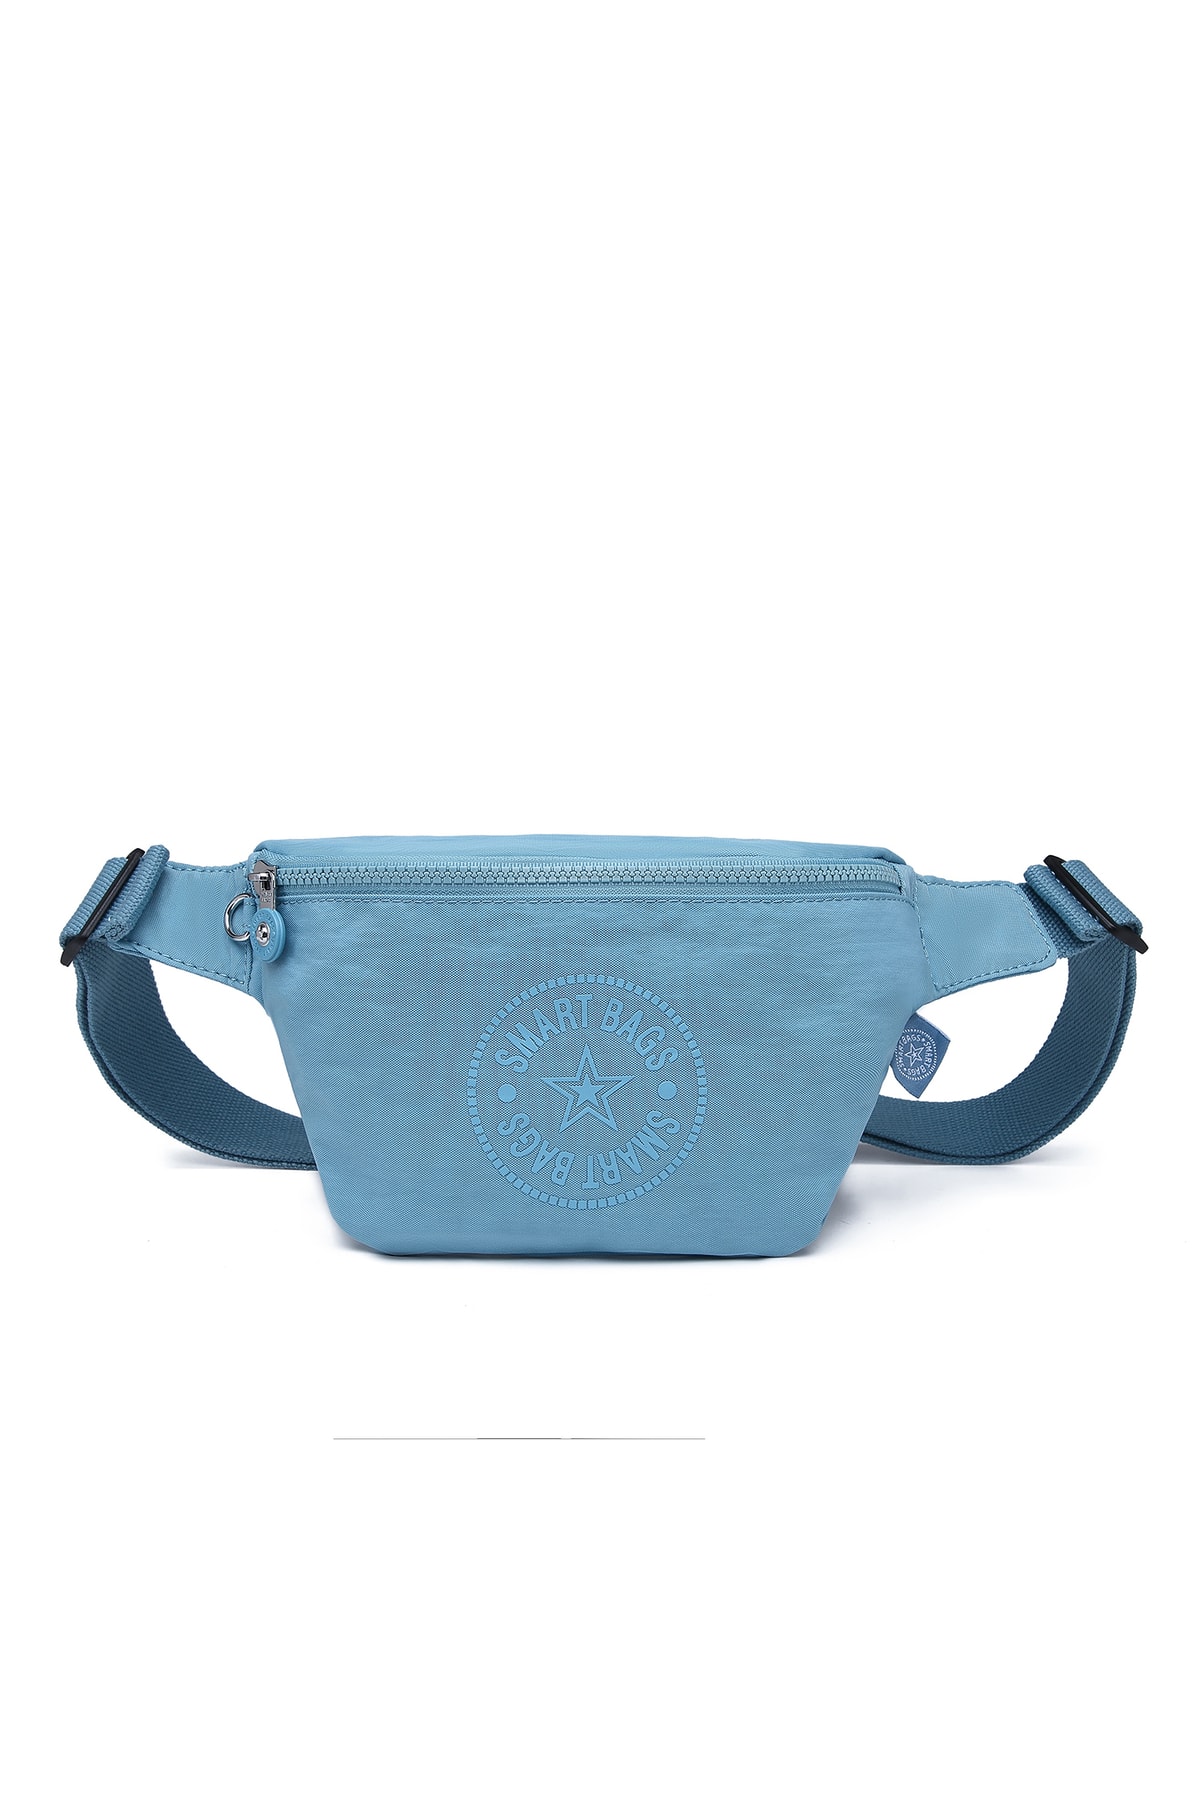 SMART BAGS Bodybag Kadın Bel Çantası Krinkıl Kumaş 3099 Buz Mavi